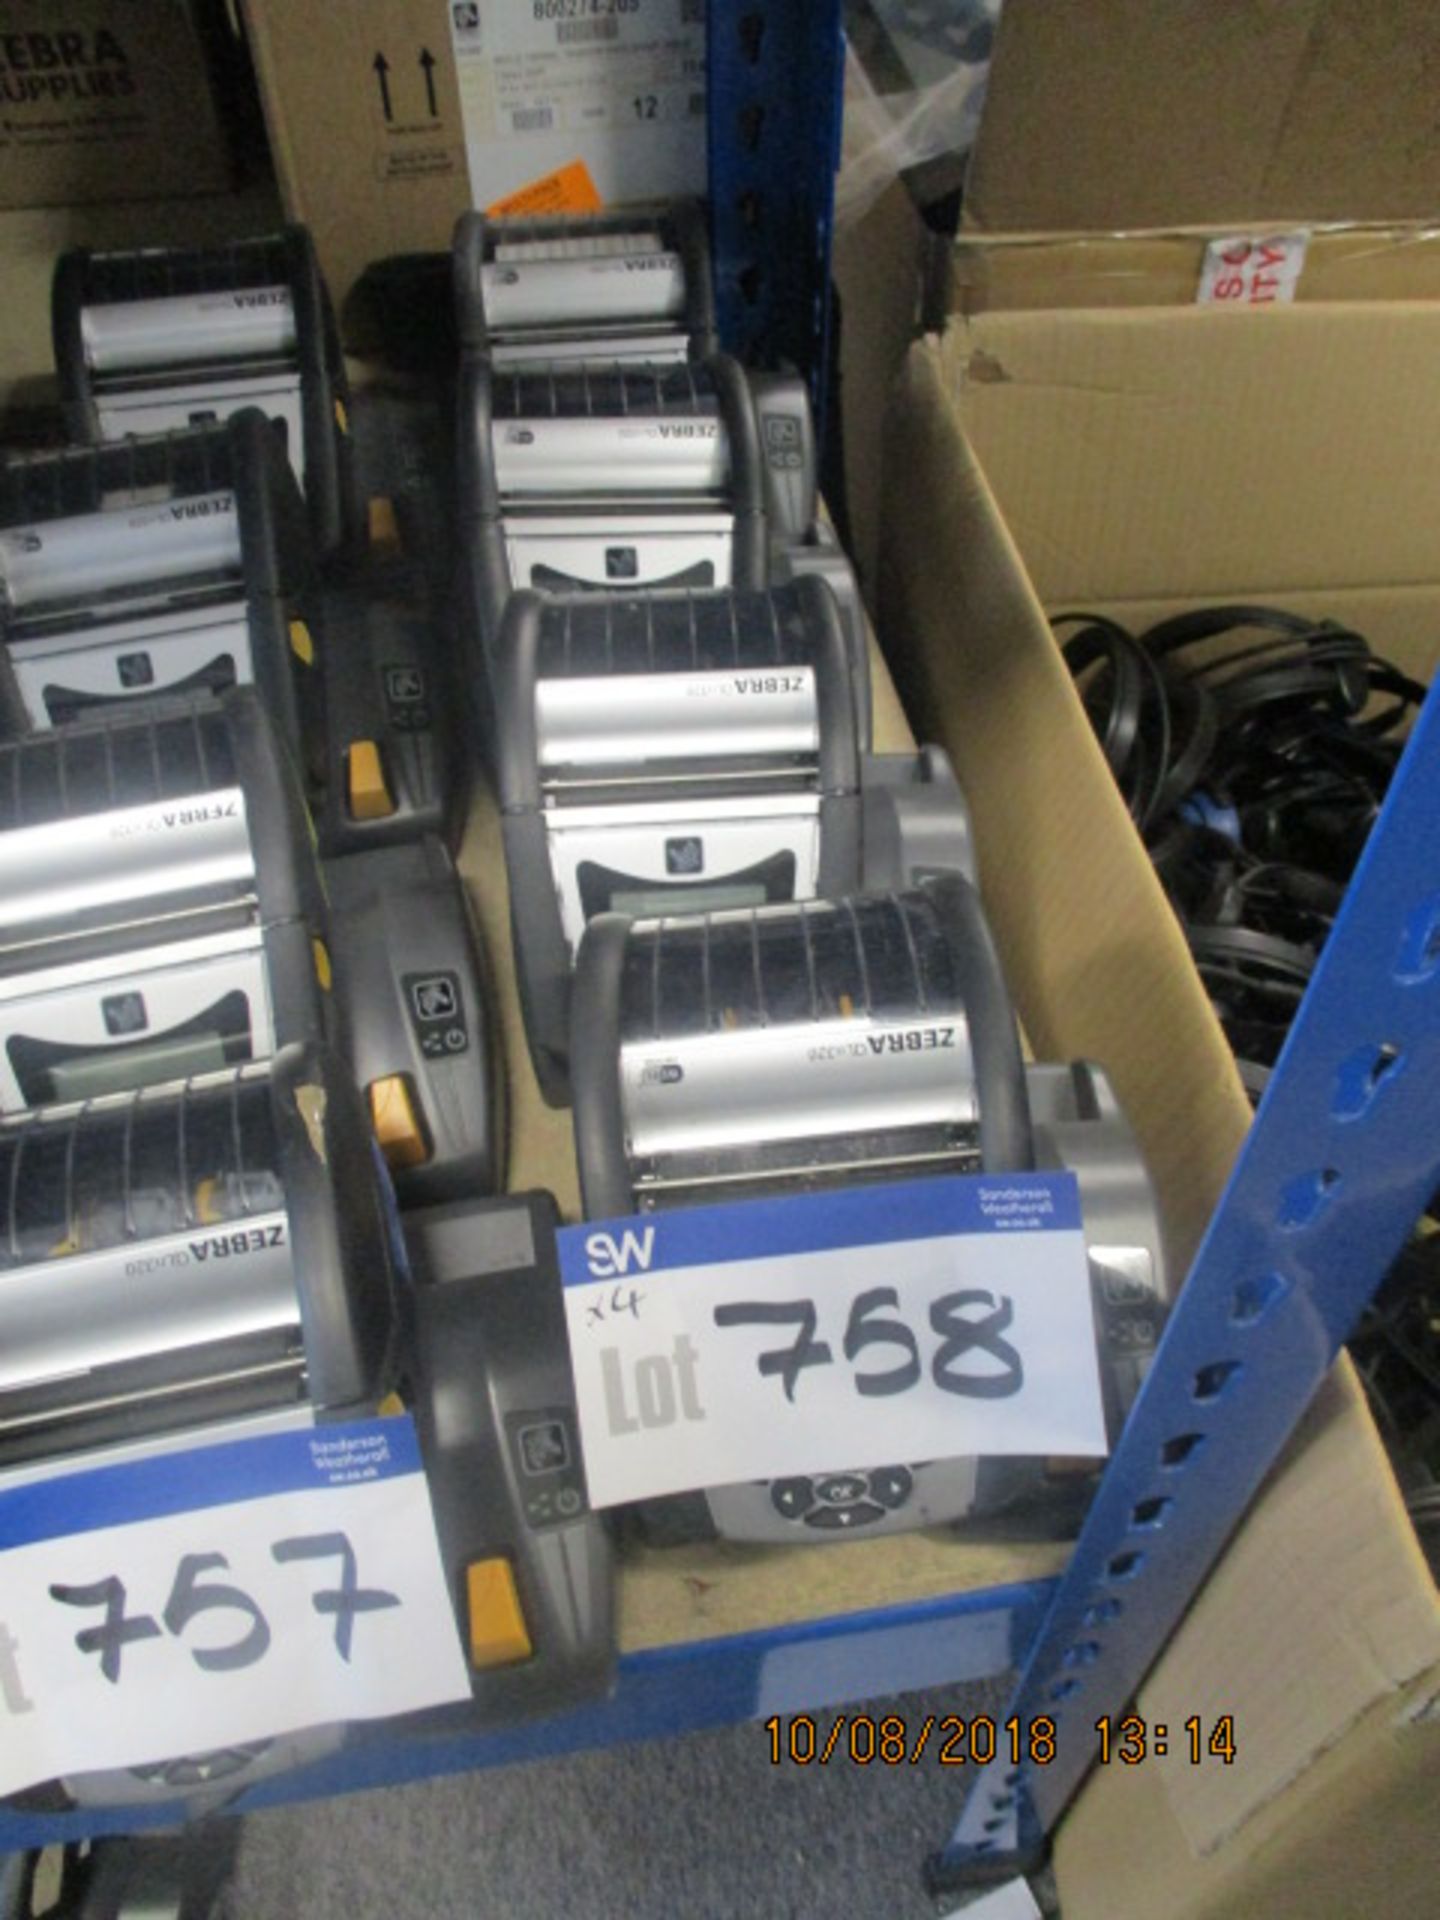 4 x Zebra QLn320 Label Printers